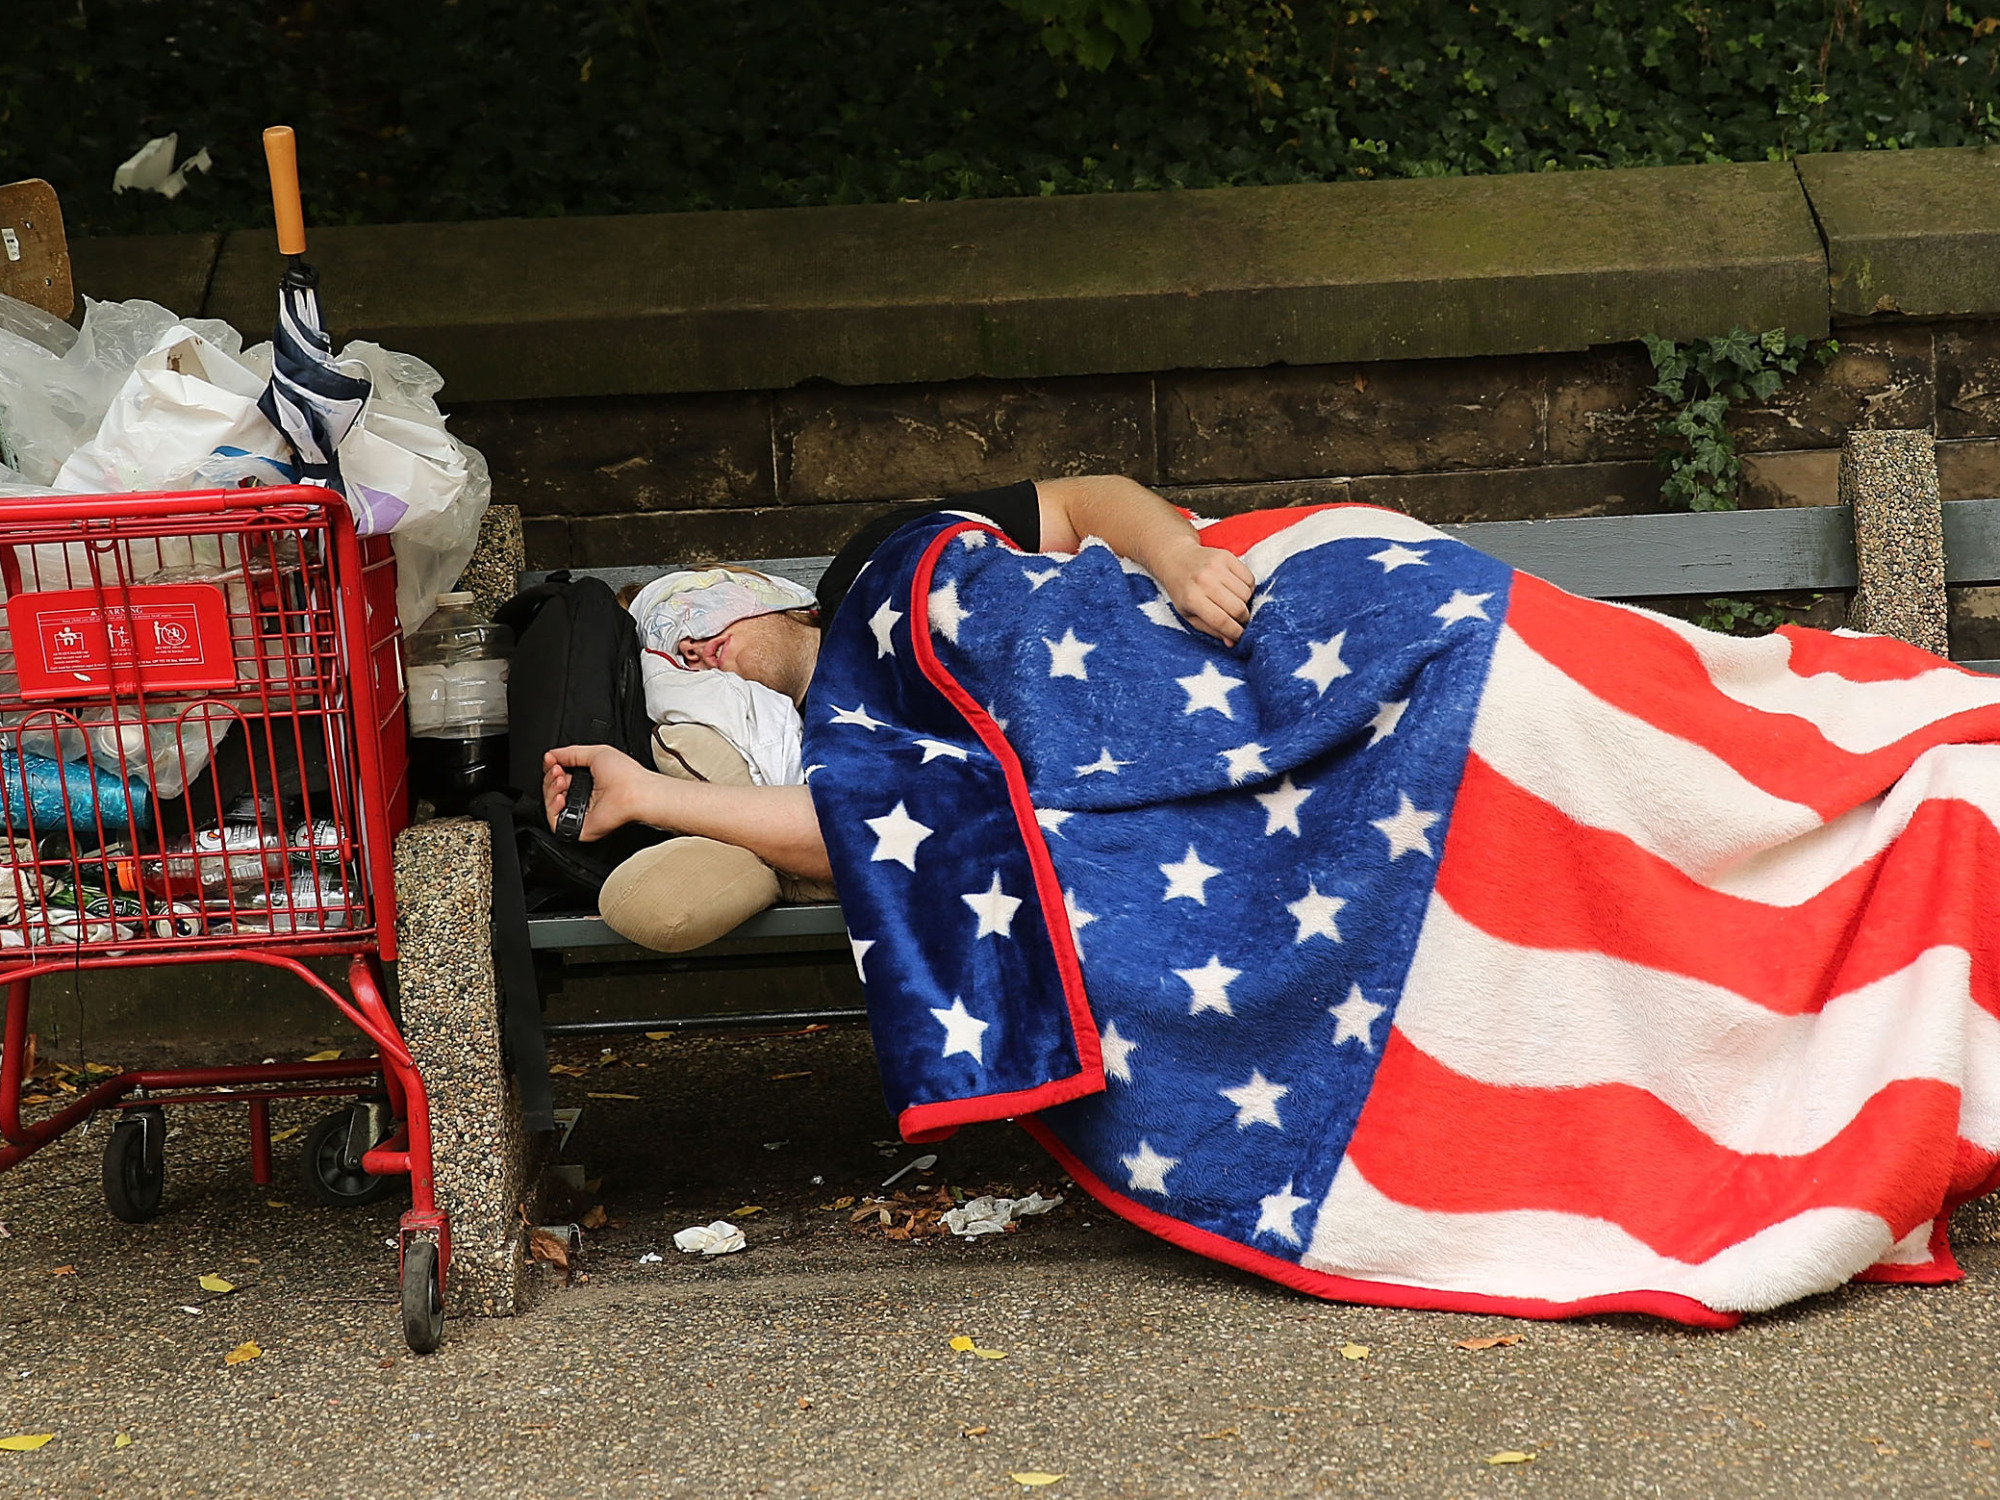 приезжий студент иммигрант спит на улице в США - высокие цены на жилье в Америке - парень с американским флагом